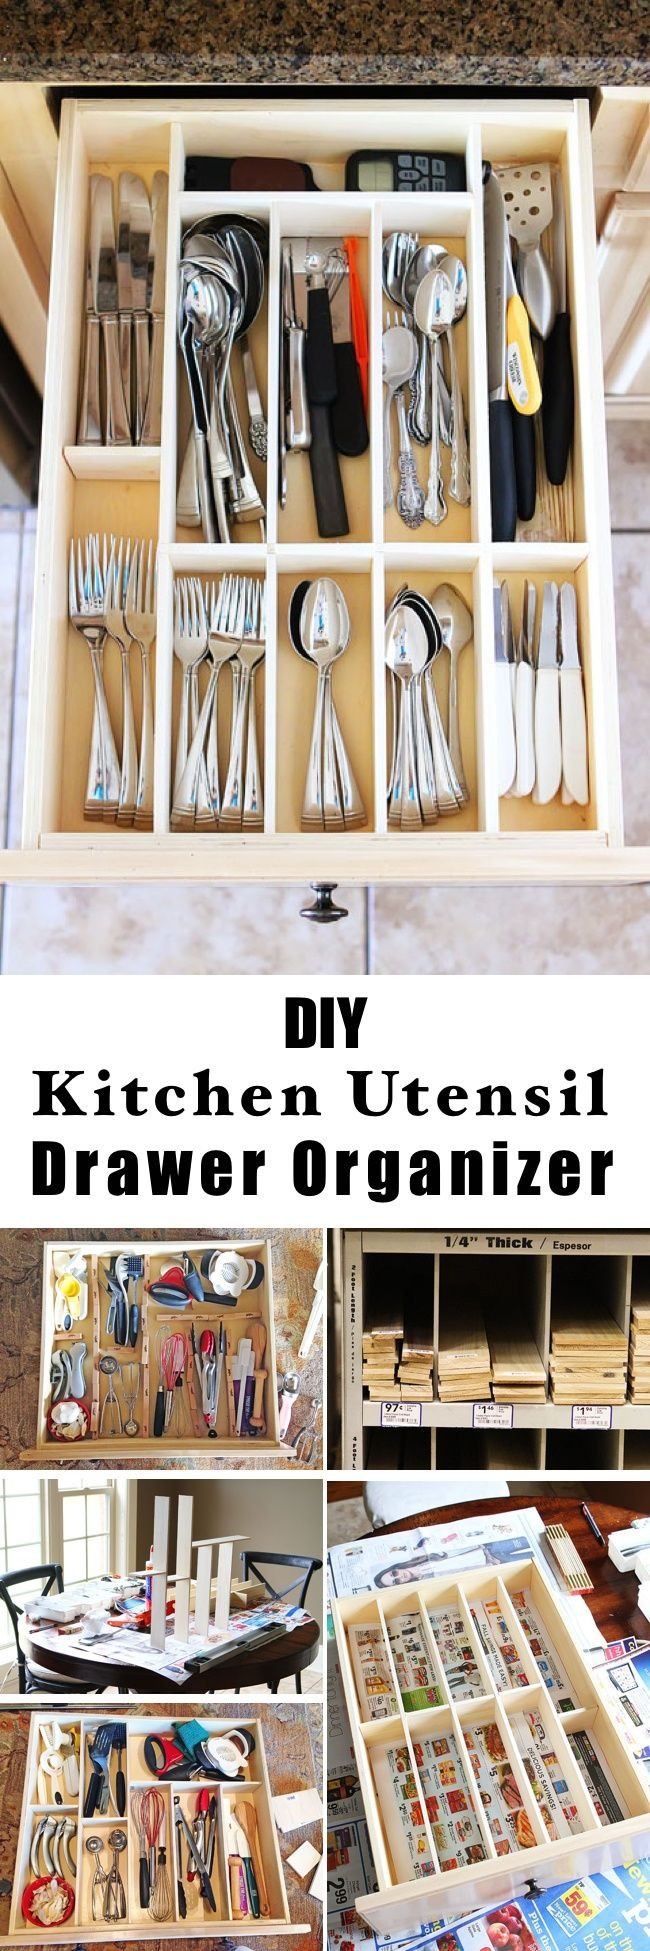 DIY Kitchen Drawer Organizer
 Best 25 Drawer dividers ideas on Pinterest